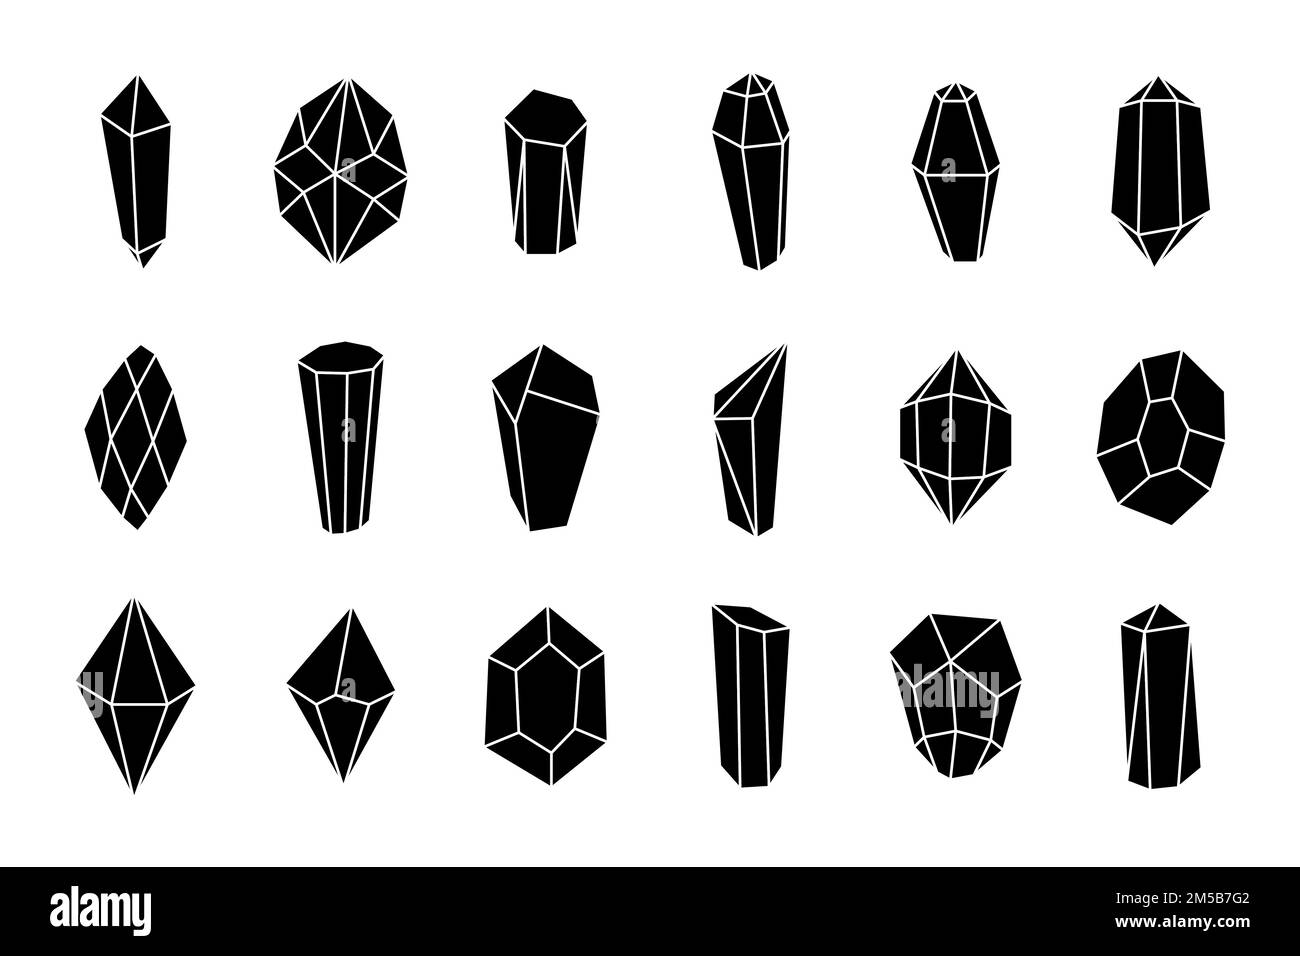 Crystal MINERALS Silueta negra Icon Set. Colección geométrica de piedra gema. Joyería y diamante vector eps ilustración de contorno aislado Ilustración del Vector